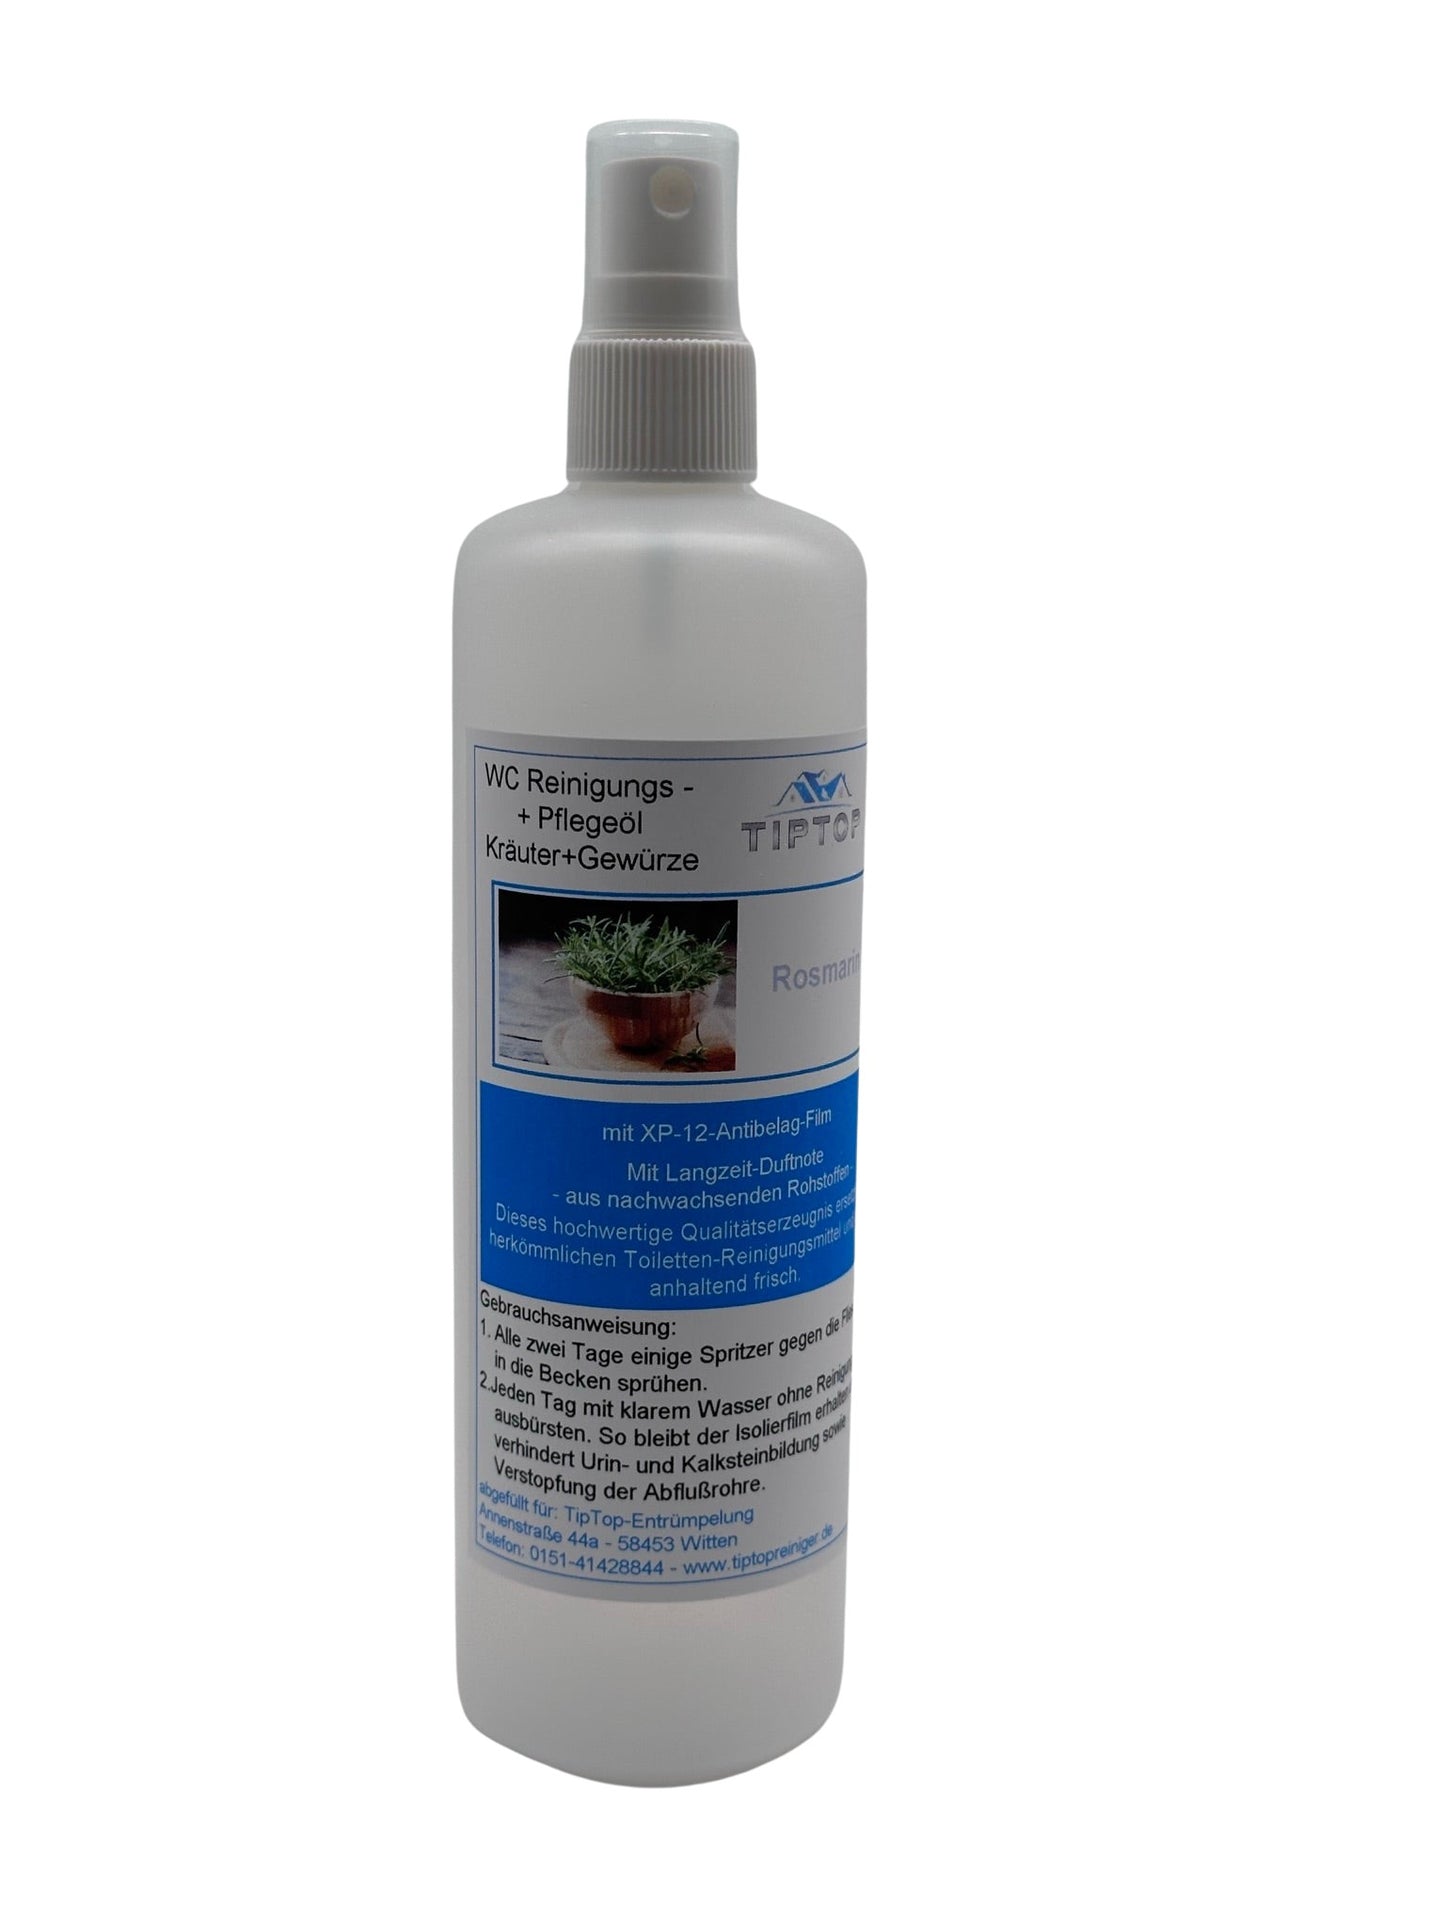 TIPTOP WC Reinigungs- und Pflegeöl - Kräuter und Gewürze -250 ml - mehrere Duftnoten zur Auswahl